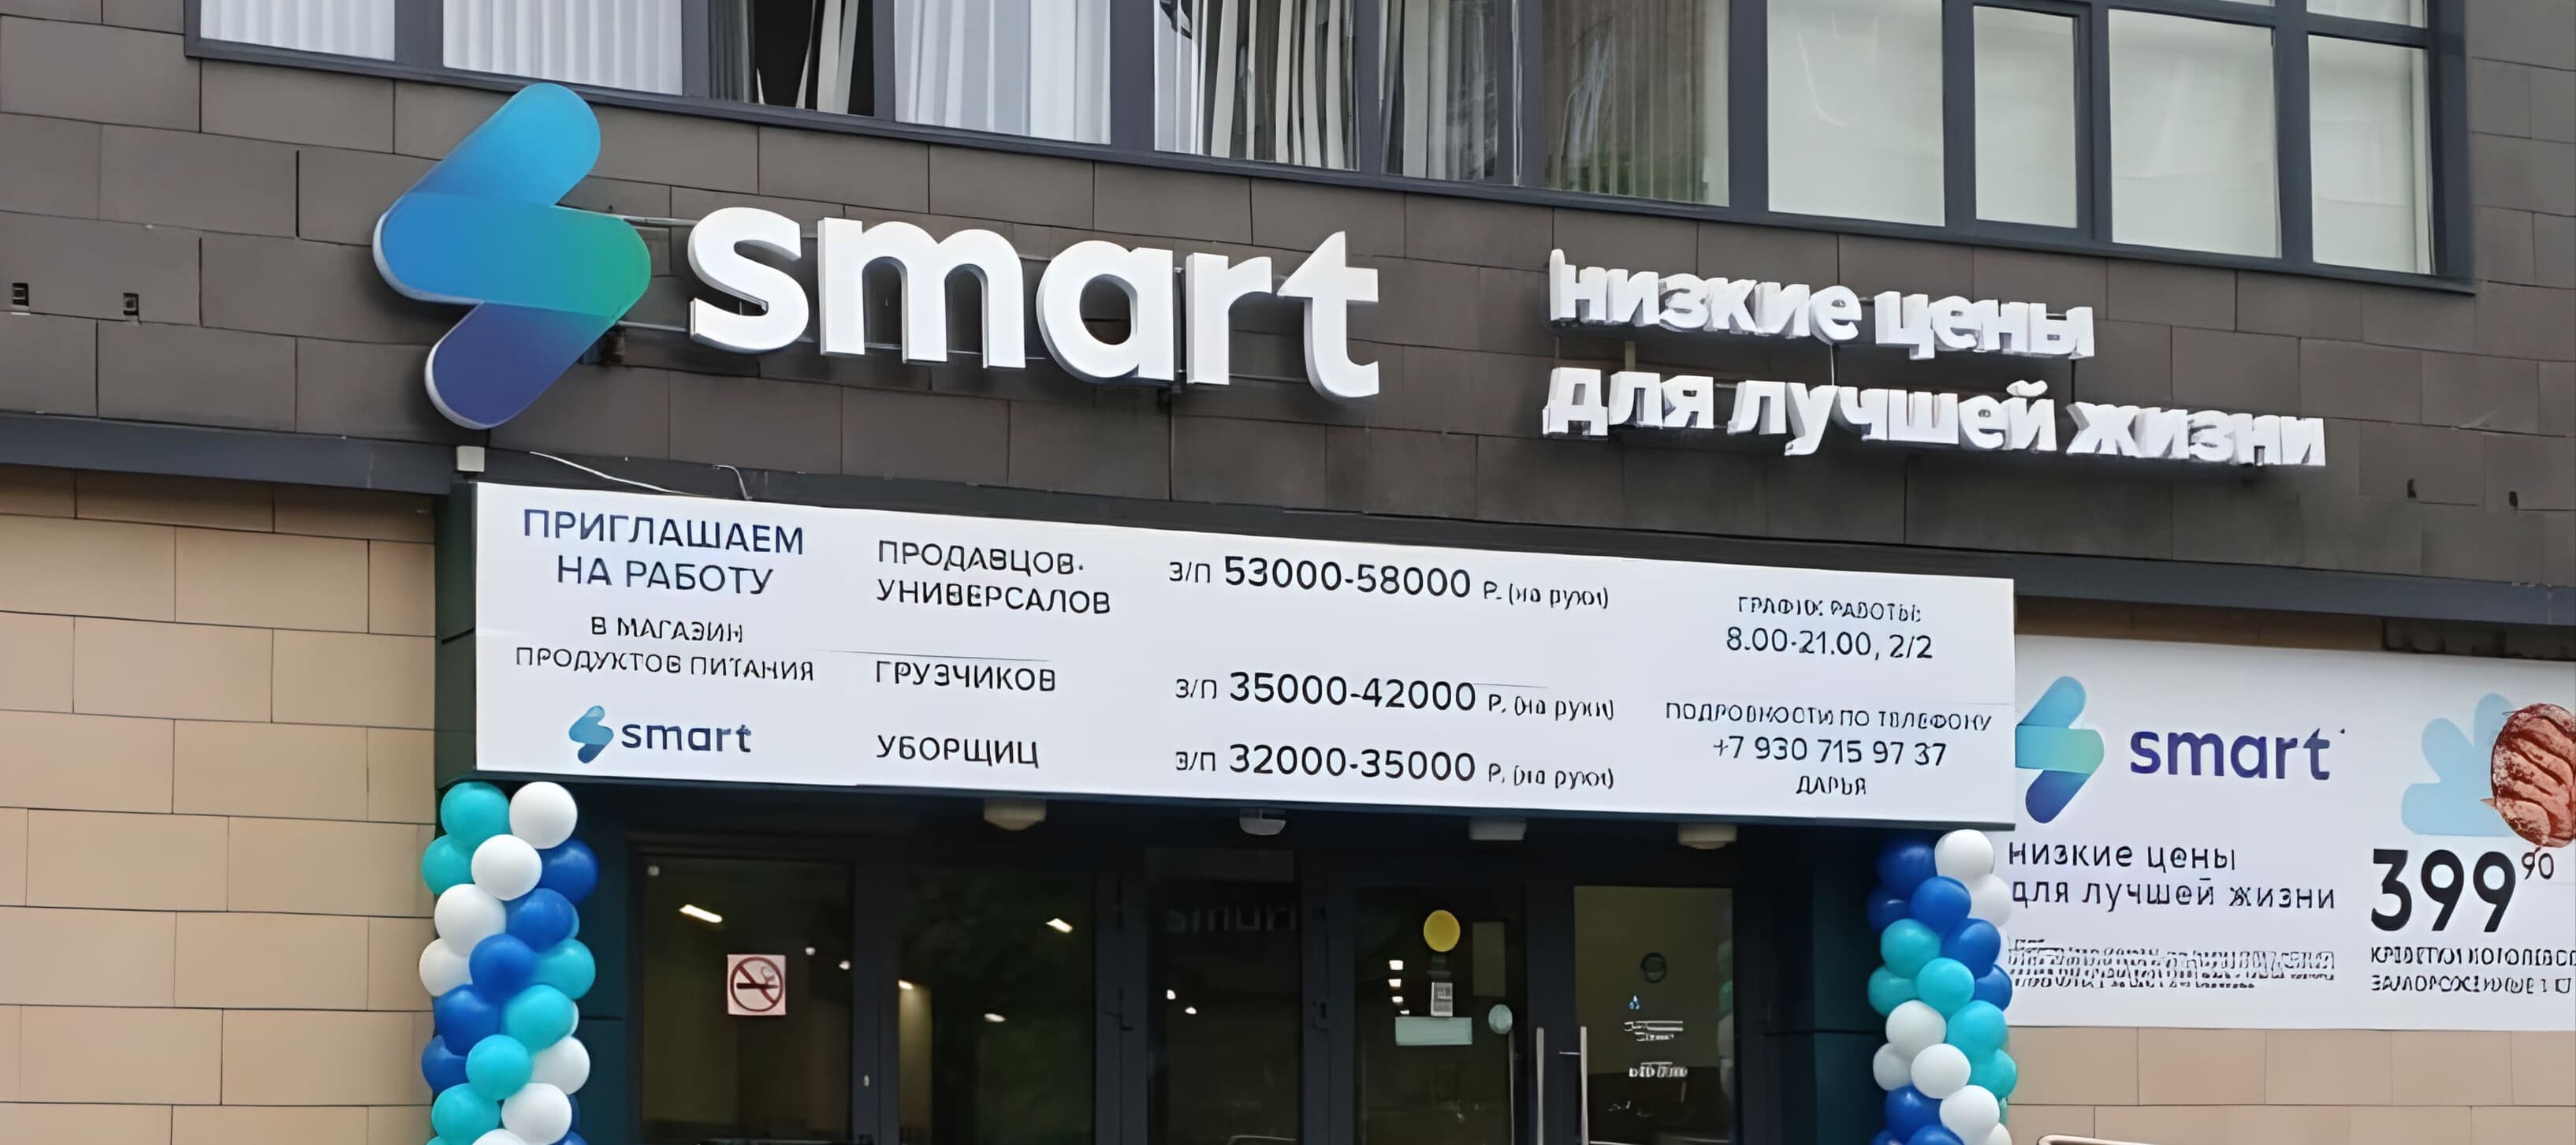 Фото новости: "В Москве открылась первая точка нижегородского дискаунтера Smart"